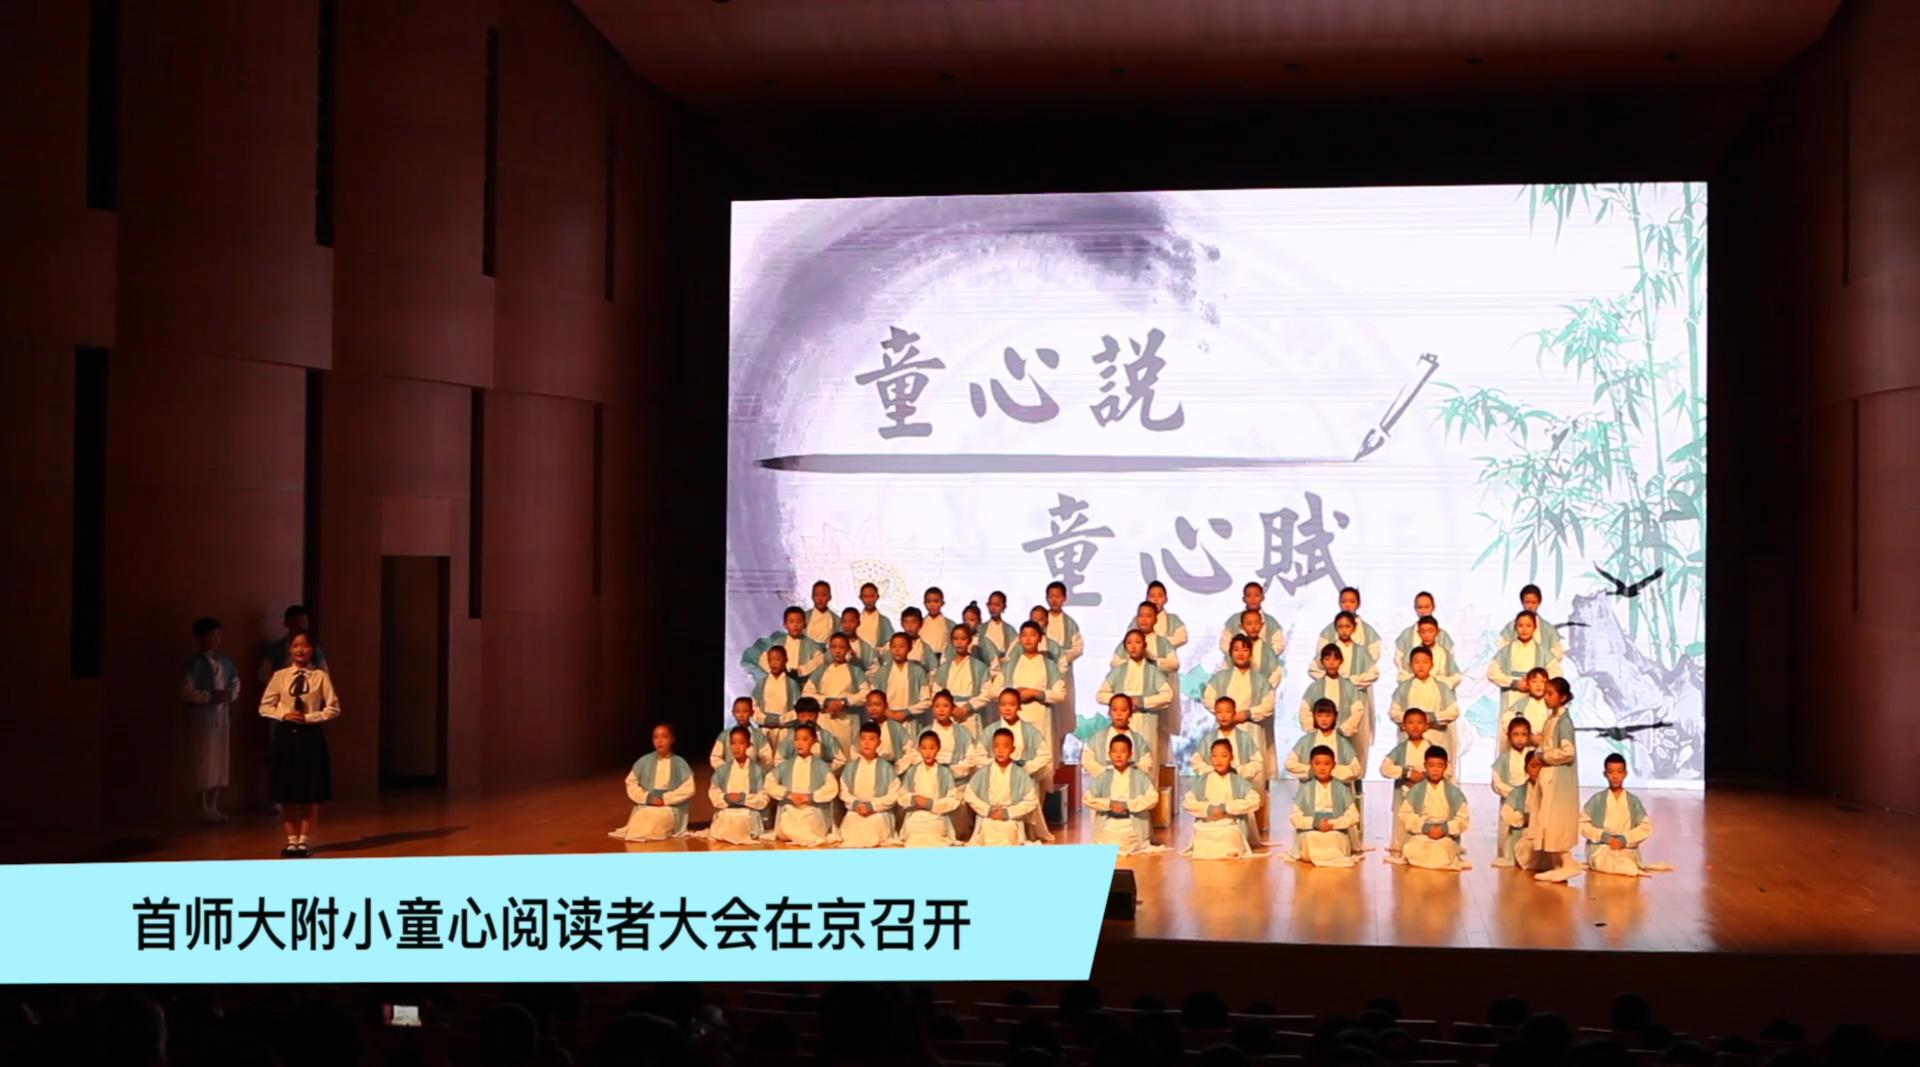 首师大附小献礼建国70周年 少年中国说响彻国图音乐厅